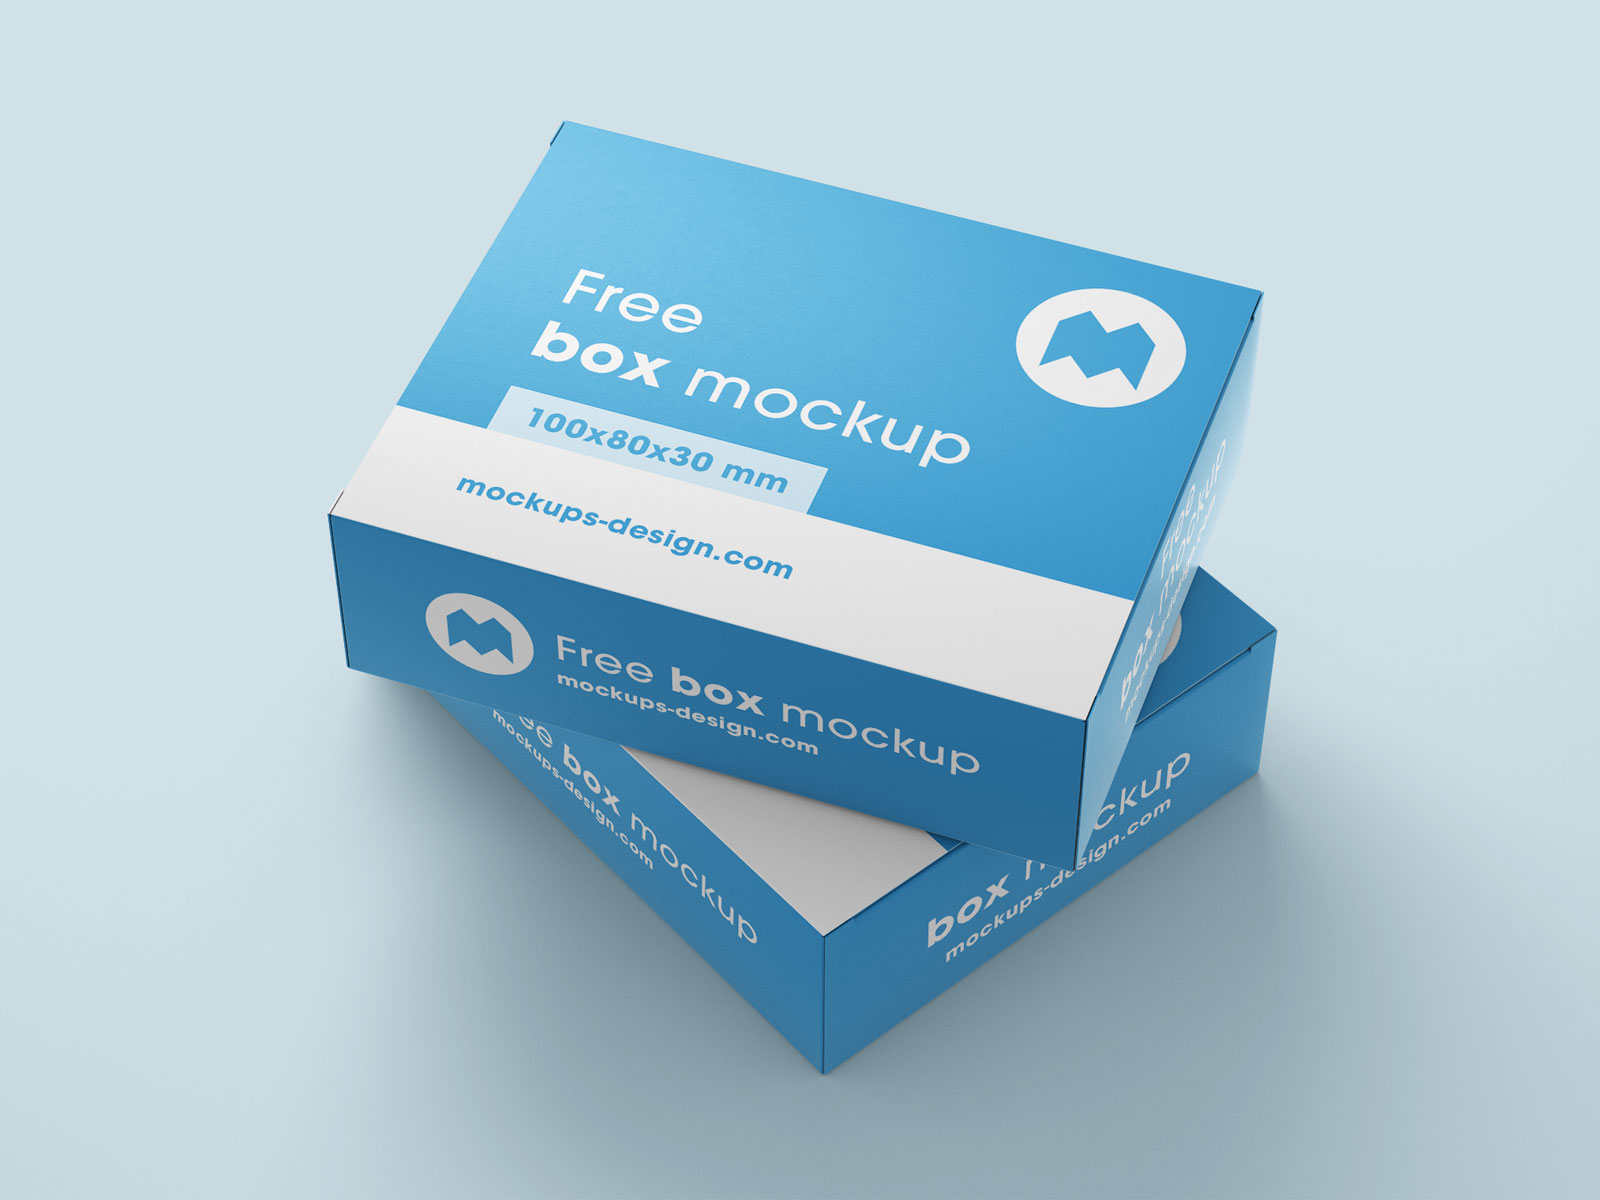 Free-Box-Packaging-Mockup-PSD-Set-3